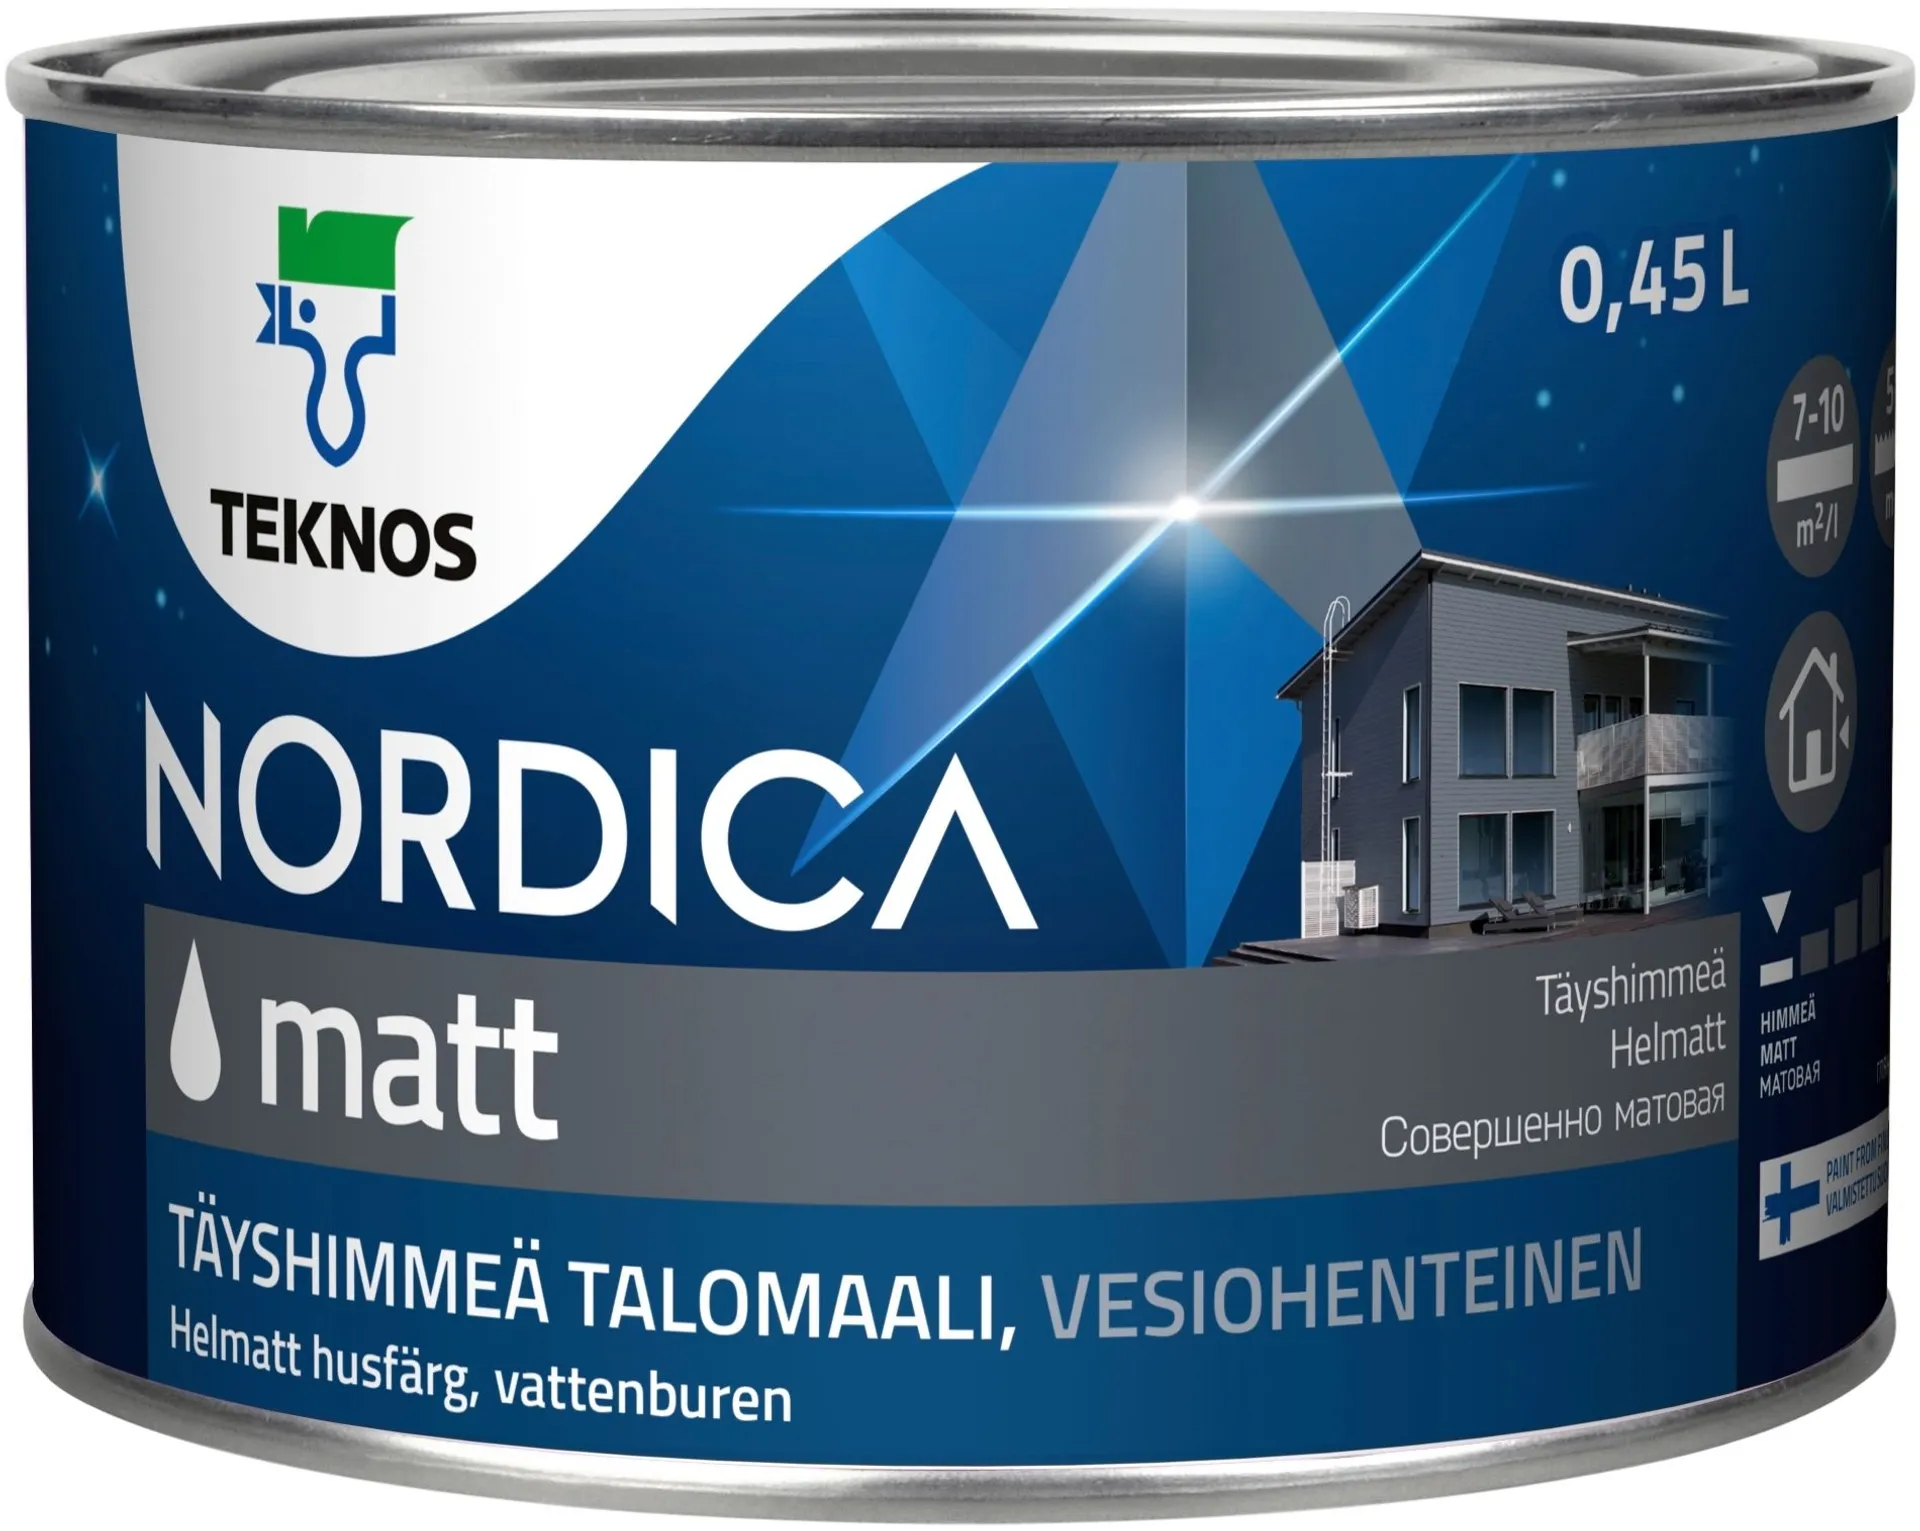 Teknos Nordica Matt talomaali 0,45l PM1 täyshimmeä, sävytettävissä